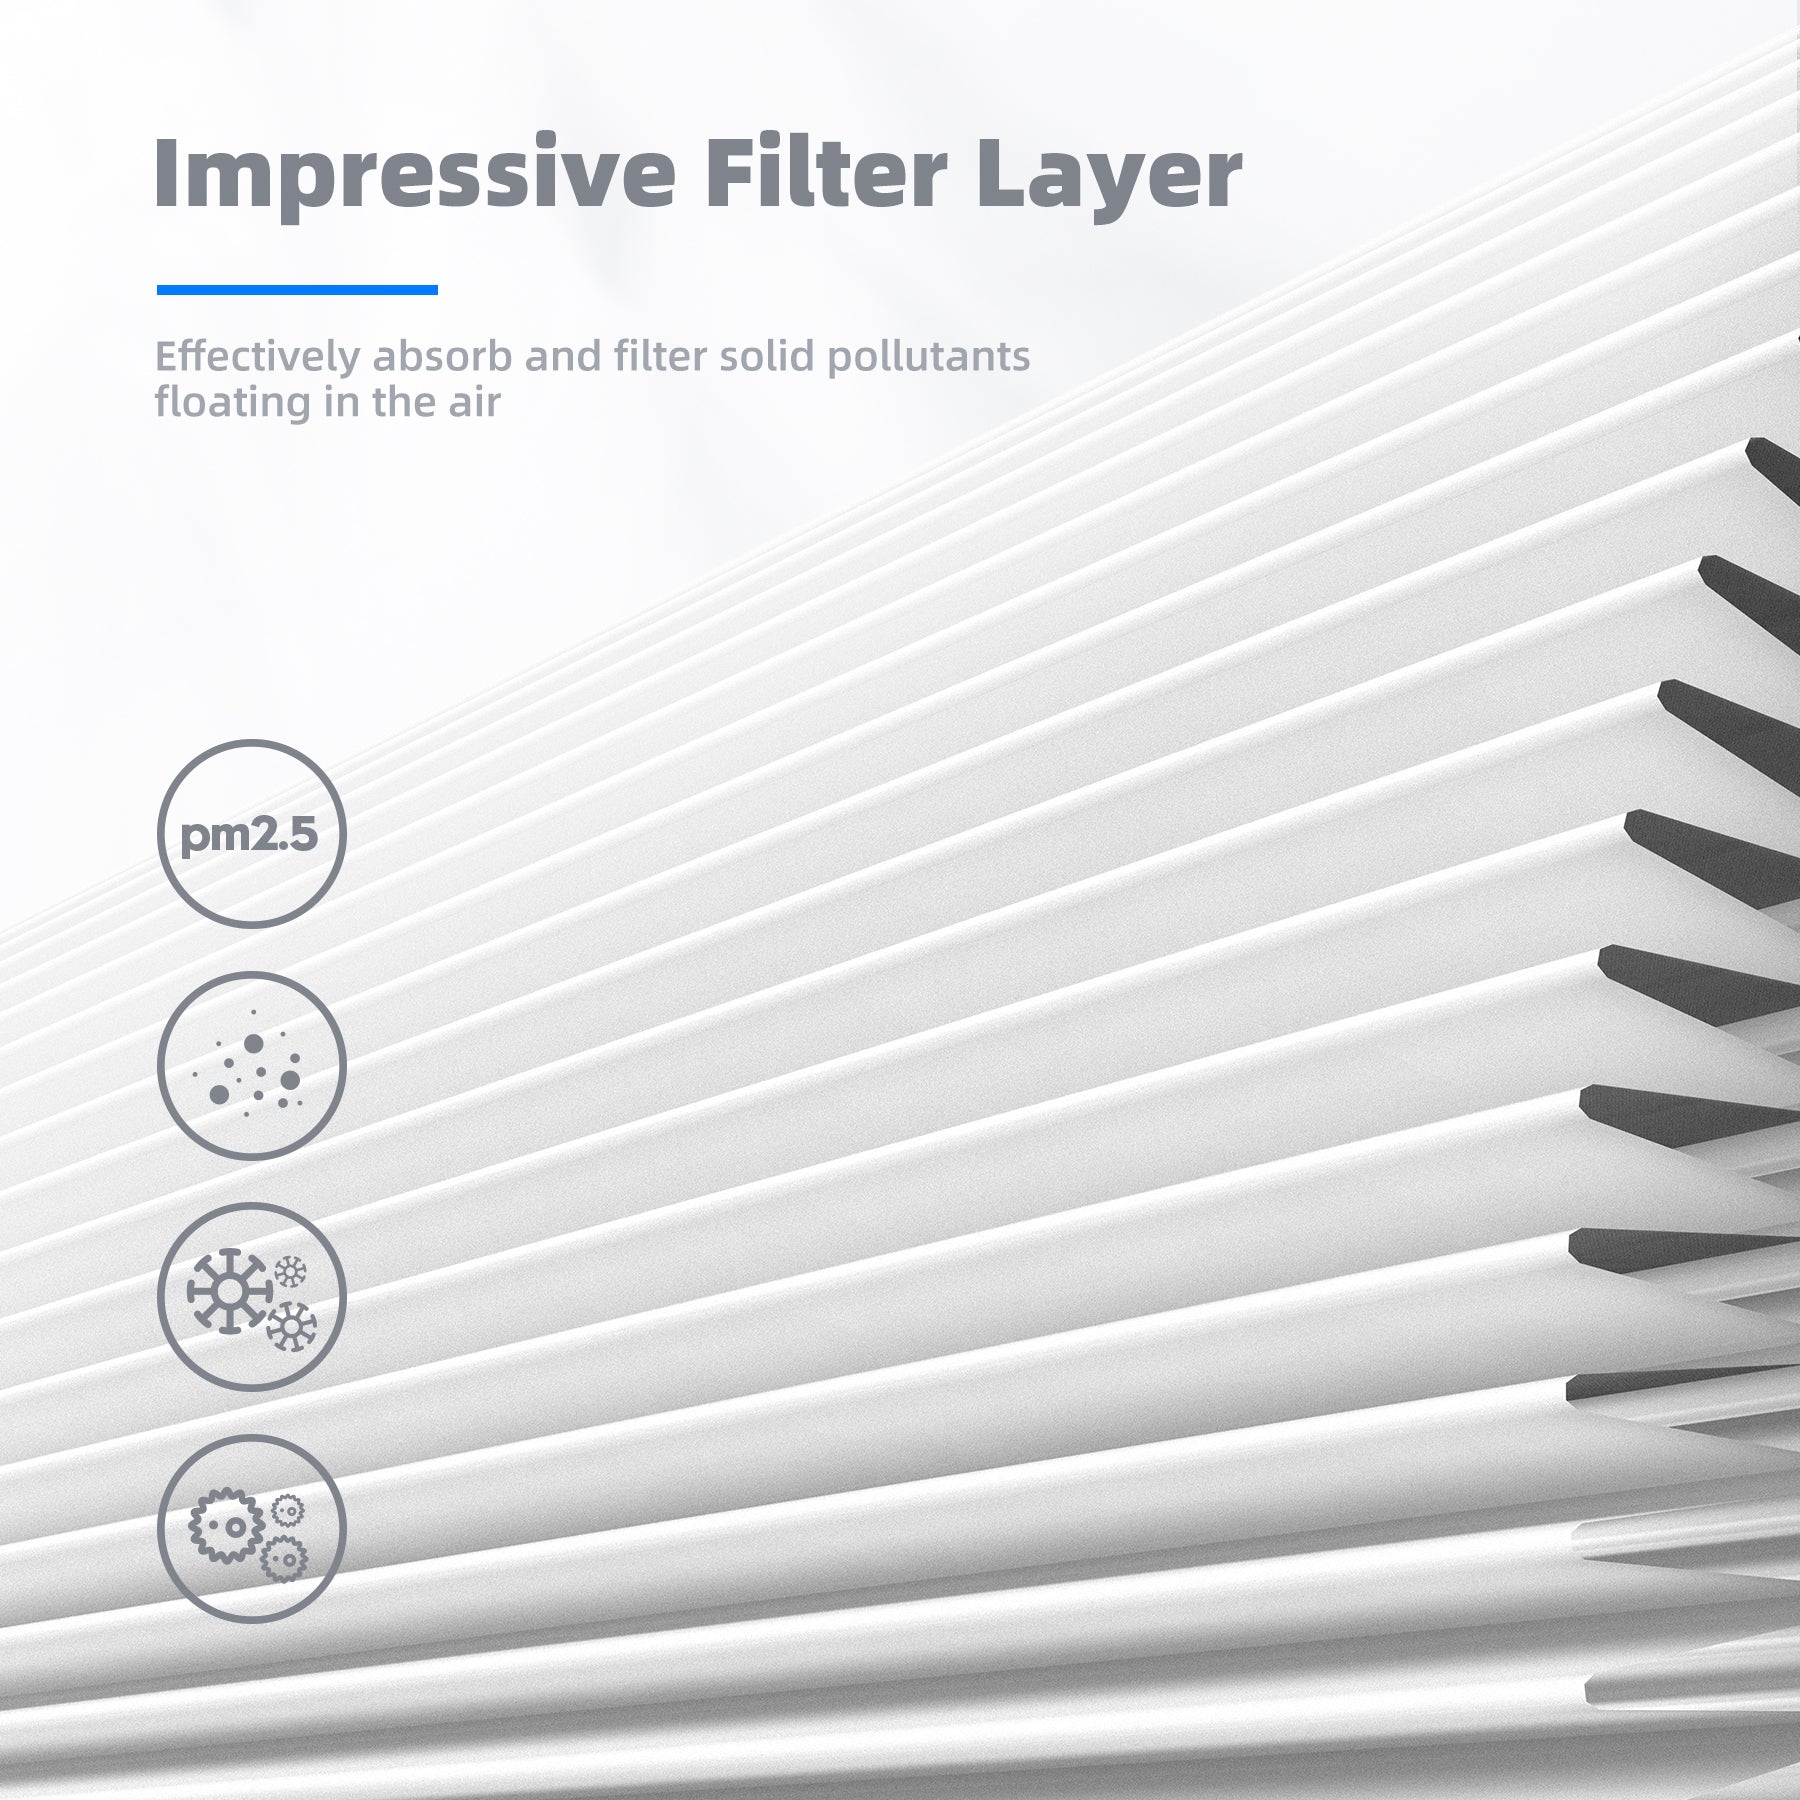 AROEVE Air Filter Replacement | MK04- Pet Dander Version